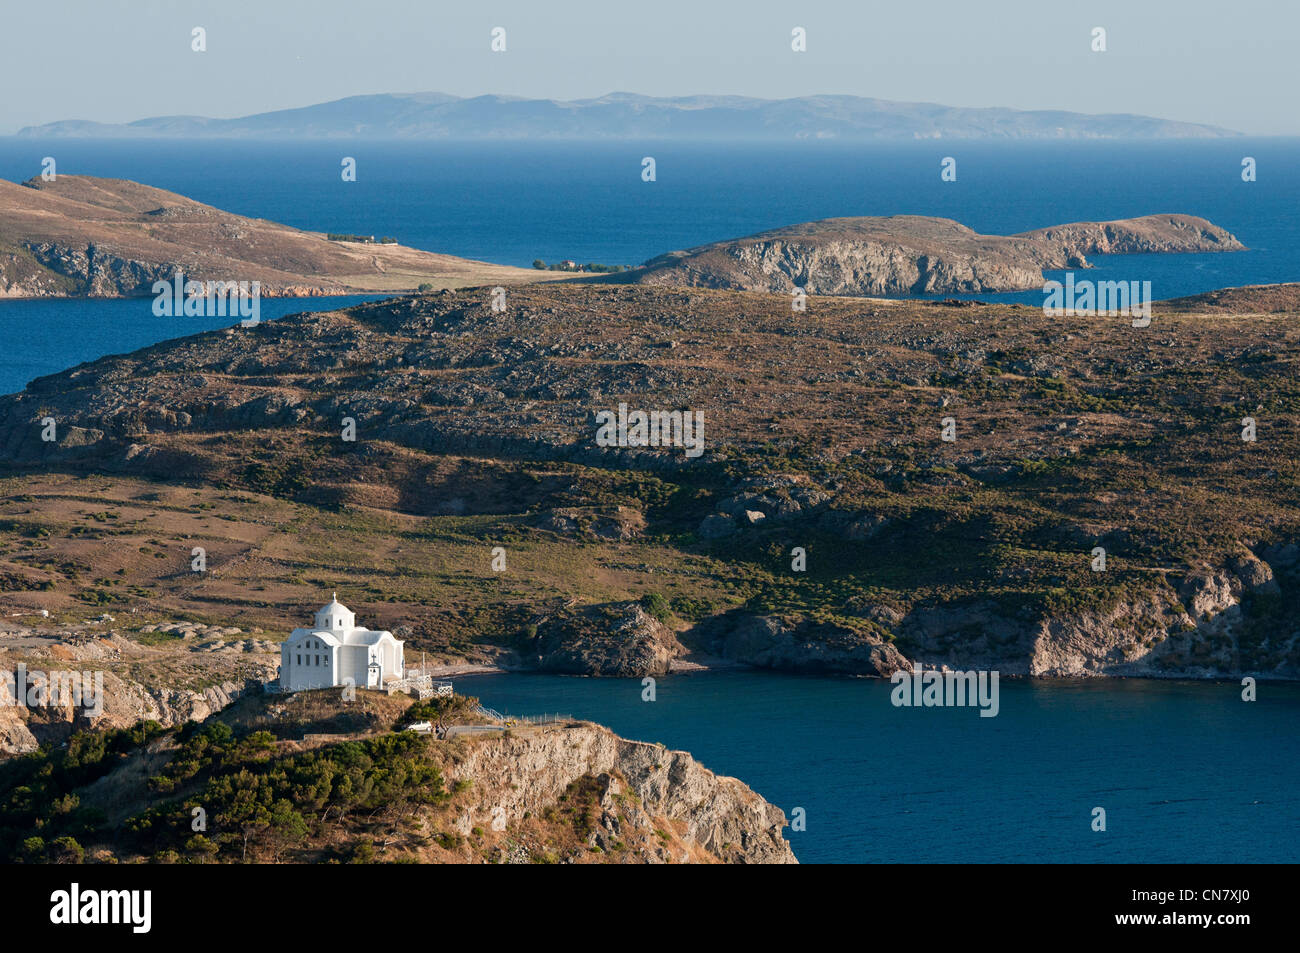 Greece, Lemnos Island, Myrina, capital town and main harbour of the island, the church Agios Nikolaos at the entrance of the Stock Photo